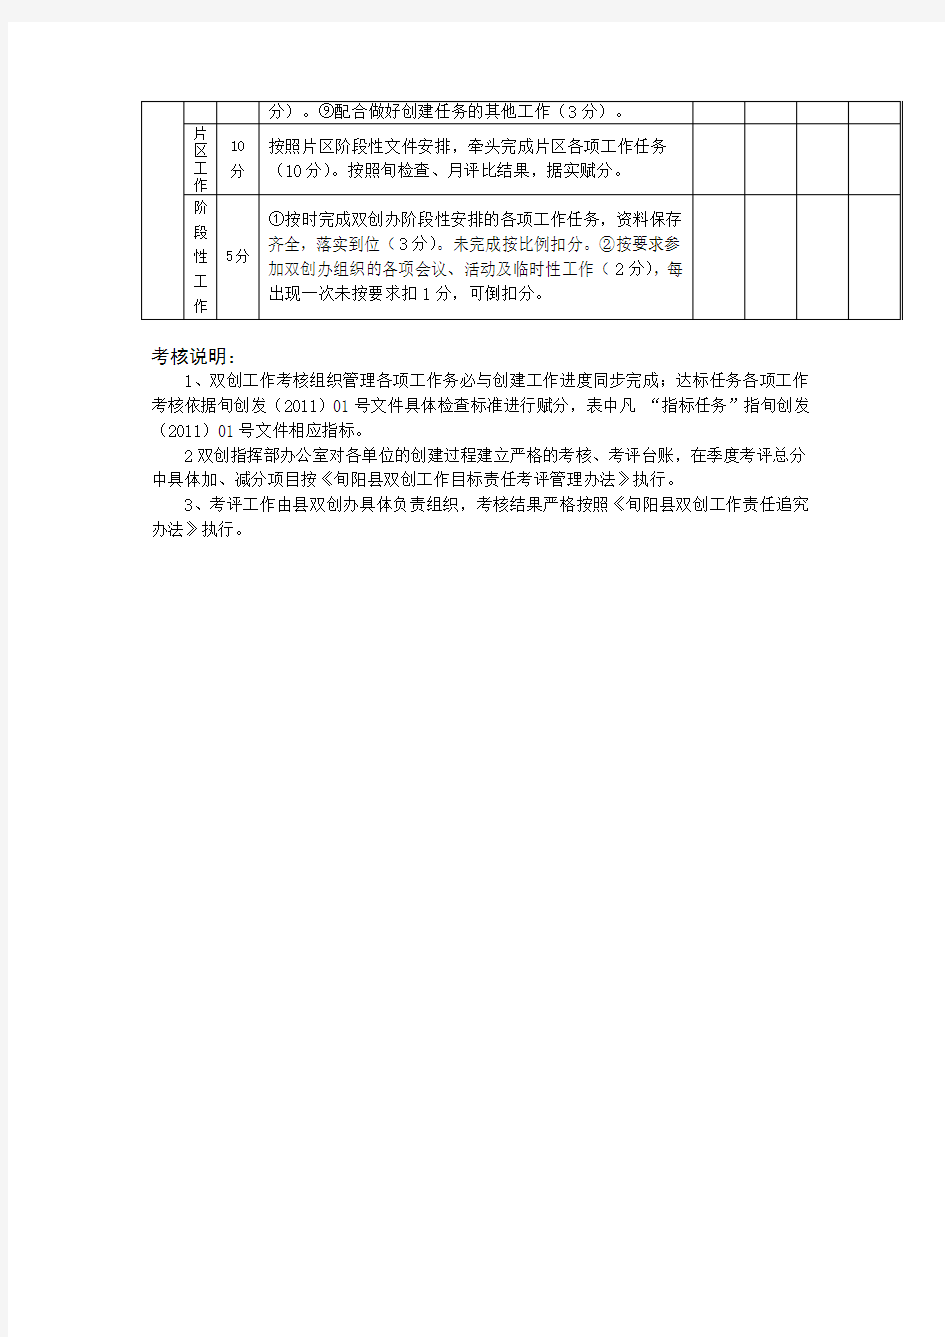 旬阳县2011年度双创重点责任单位目标任务考核指标及赋分表